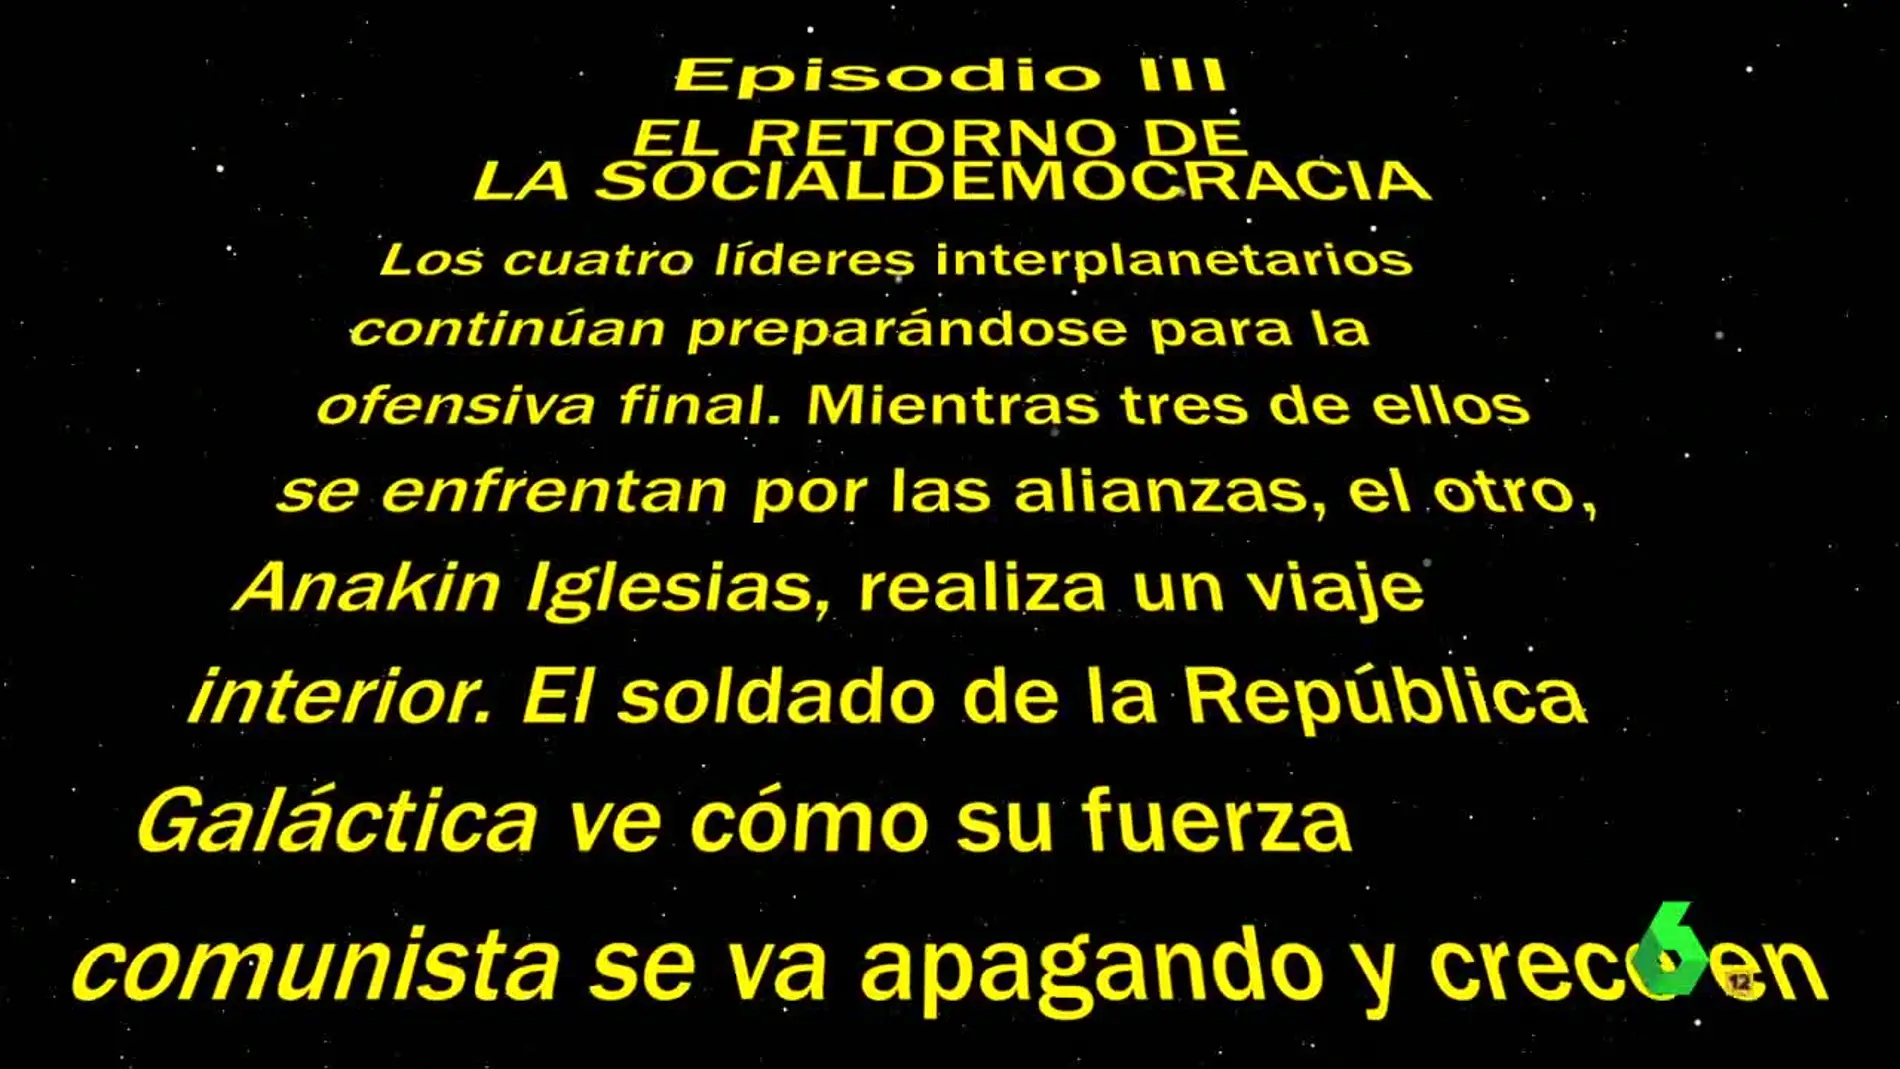 Episodio III ‘El retorno de la socialdemocracia’